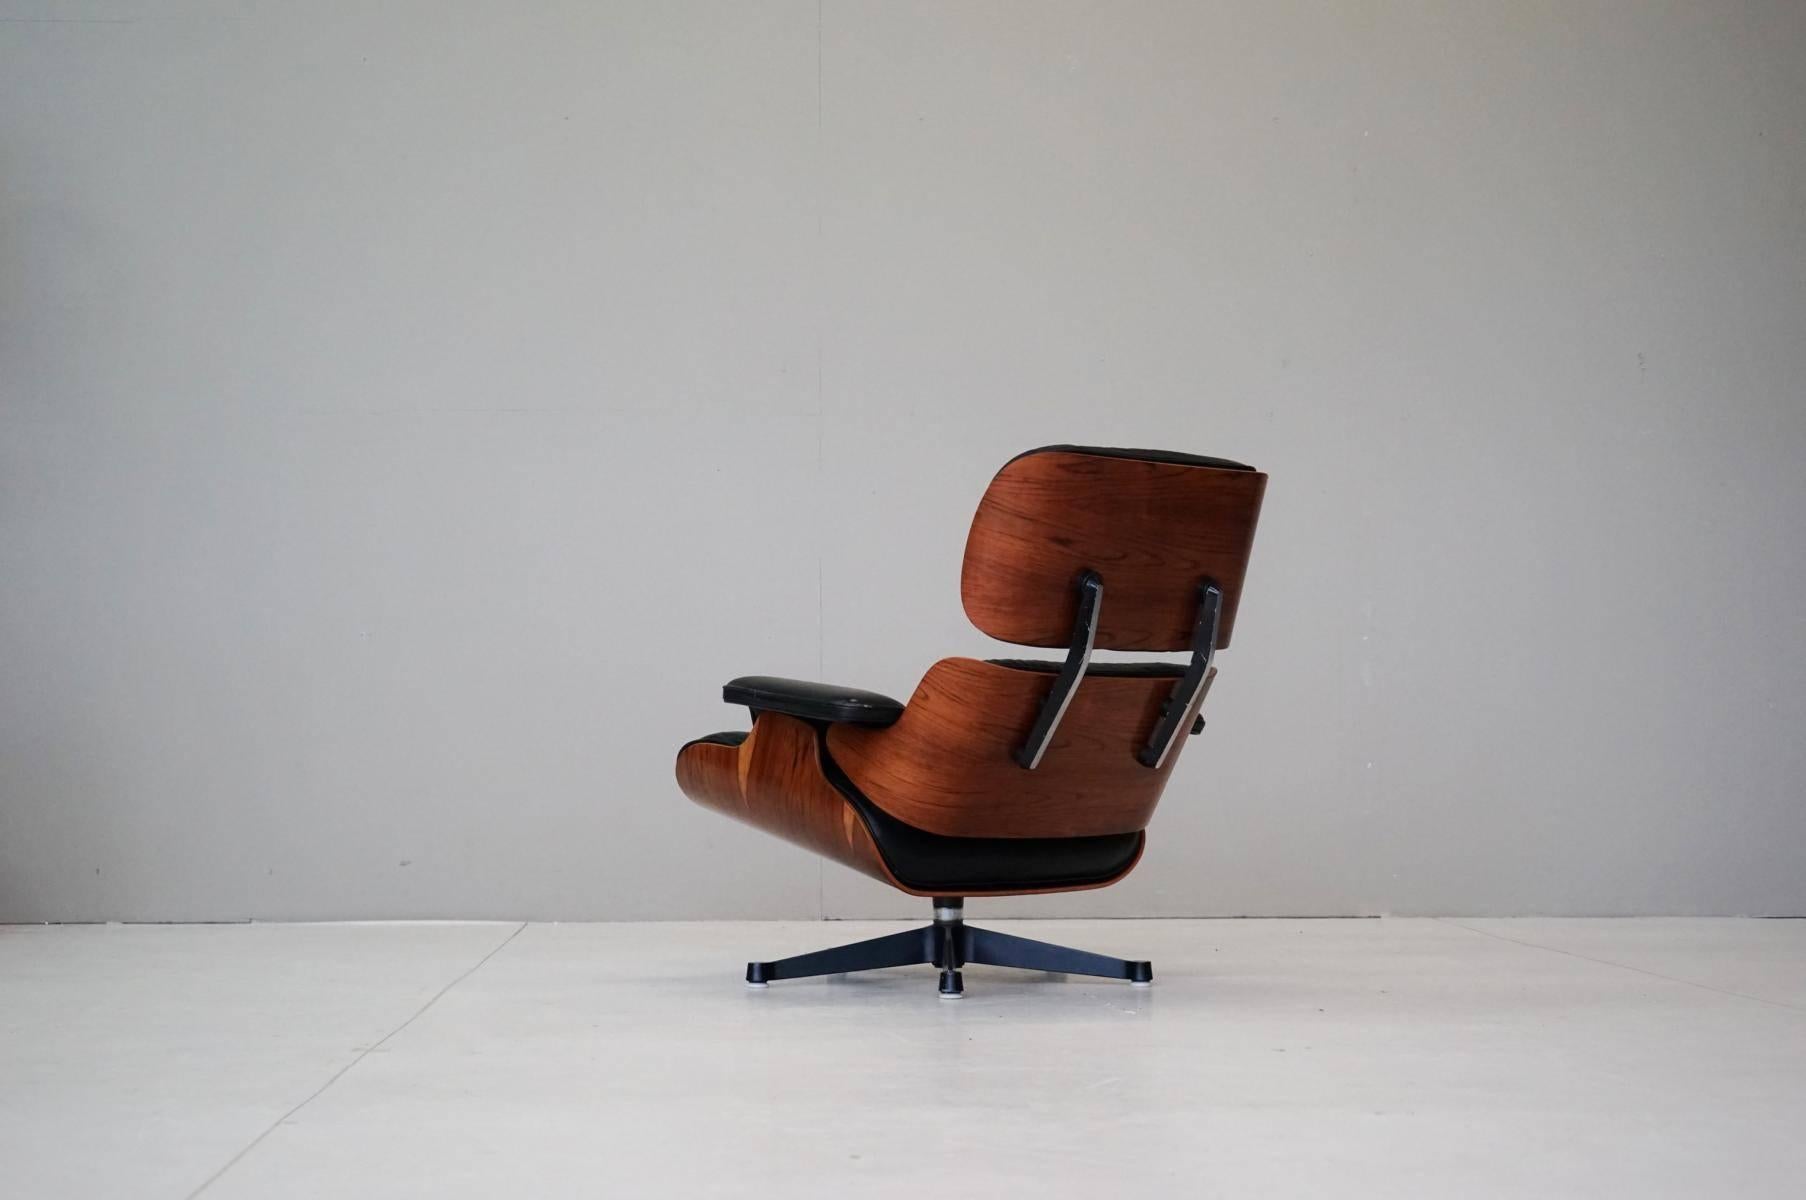 German Charles Eames Original Lounge Chair Herman Miller Leather Rosewood Armchair